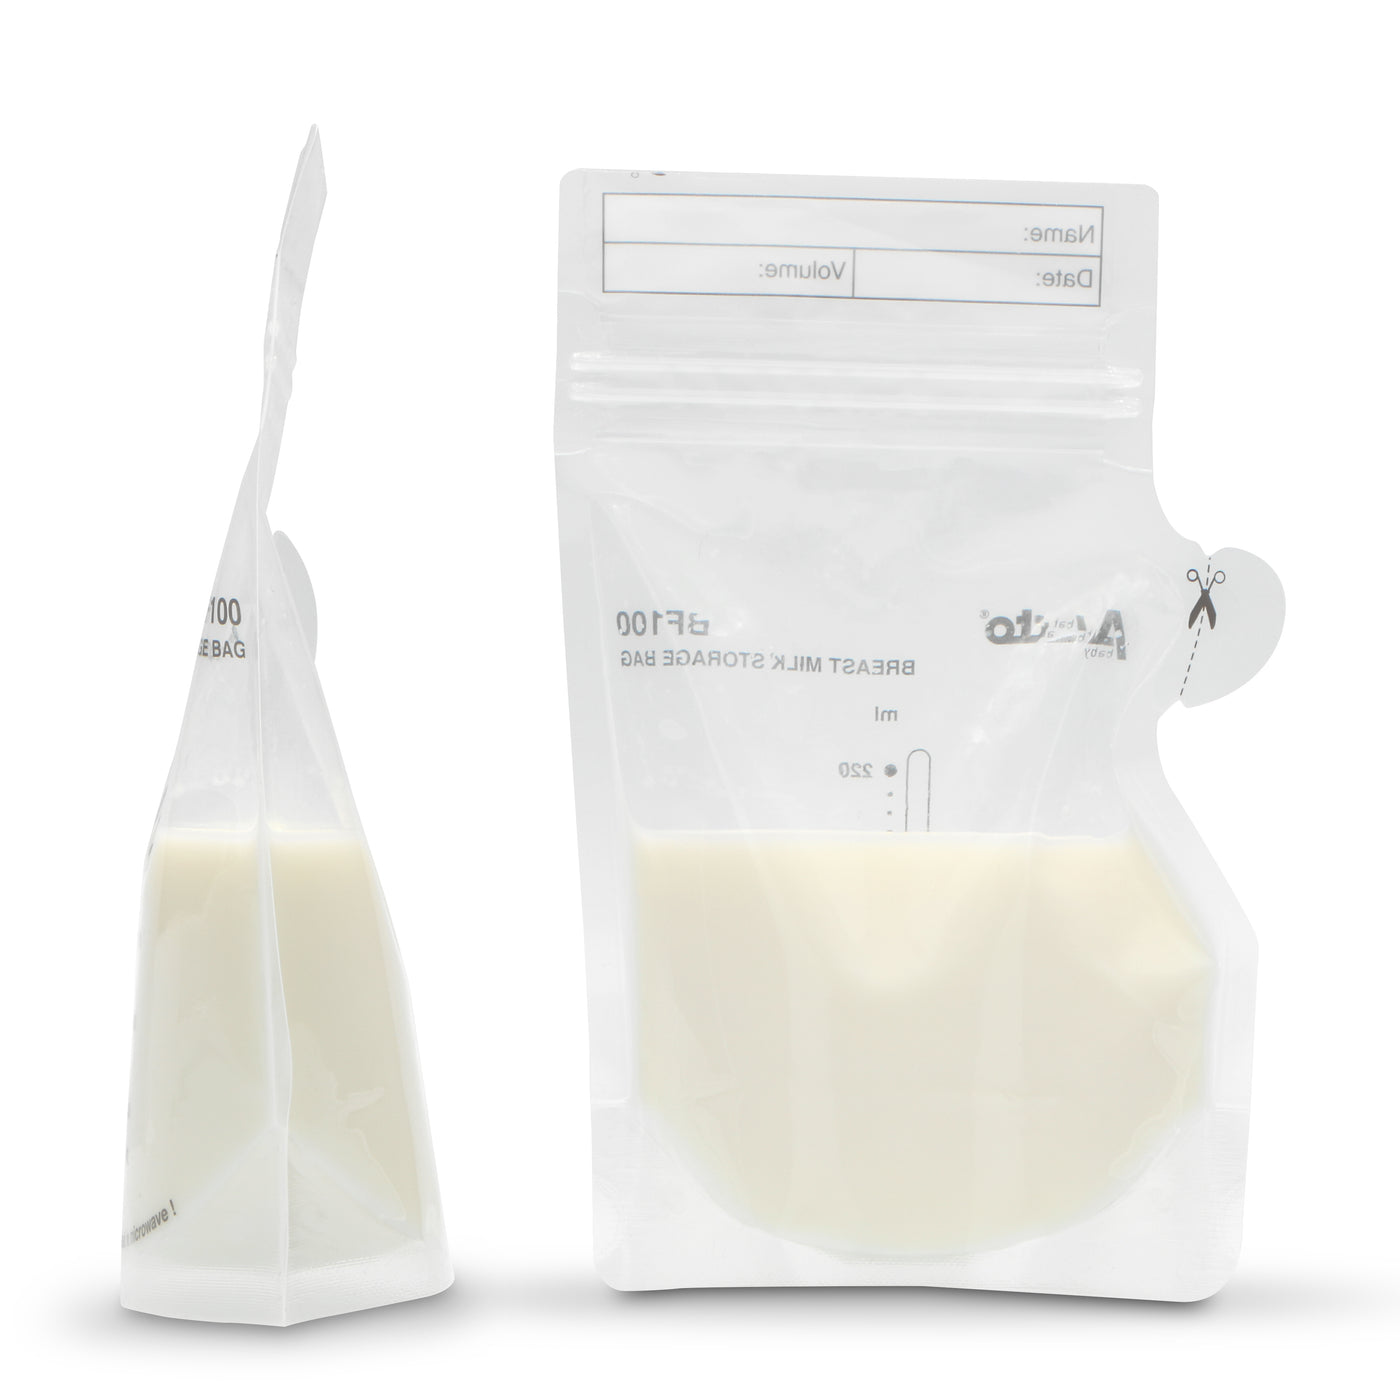 Alecto BF100 - Mother milk storage bags 220 ml, 100 pieces